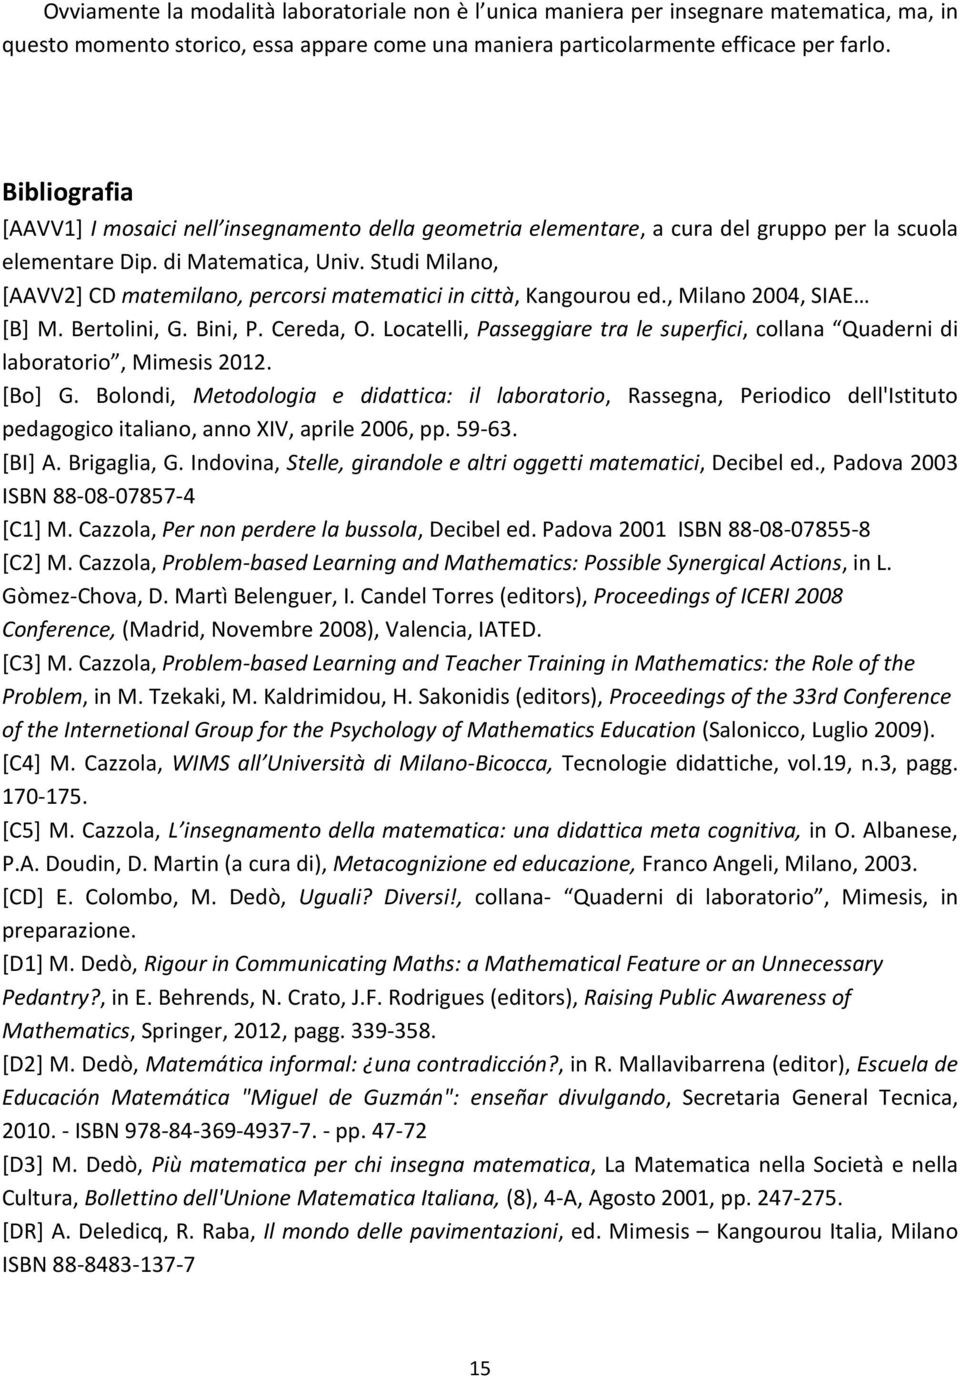 Studi Milano, [AAVV2] CD matemilano, percorsi matematici in città, Kangourou ed., Milano 2004, SIAE [B] M. Bertolini, G. Bini, P. Cereda, O.